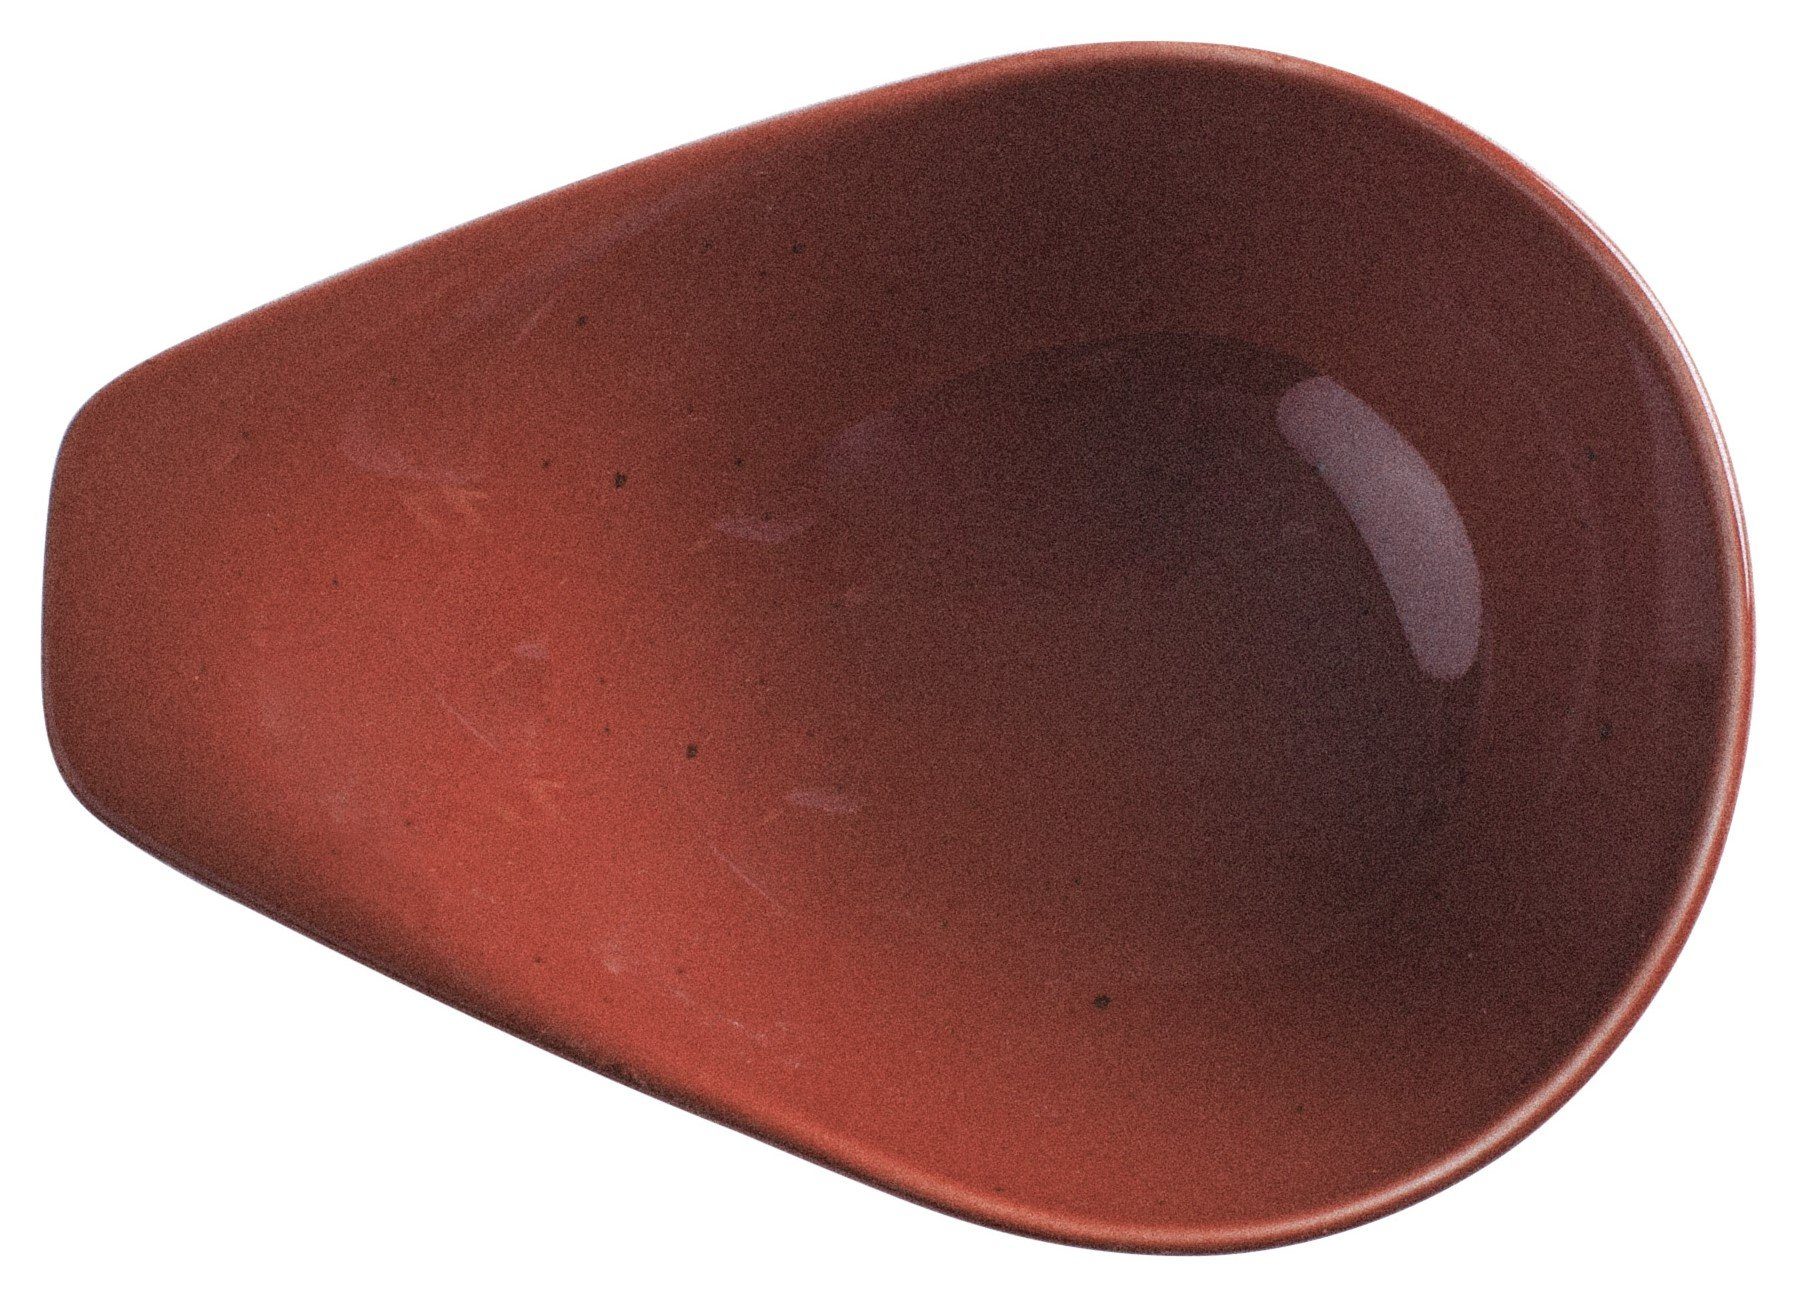 Kahla Suppenschale Homestyle 0,60 l, Porzellan, Handglasiert, Made in Germany siena red